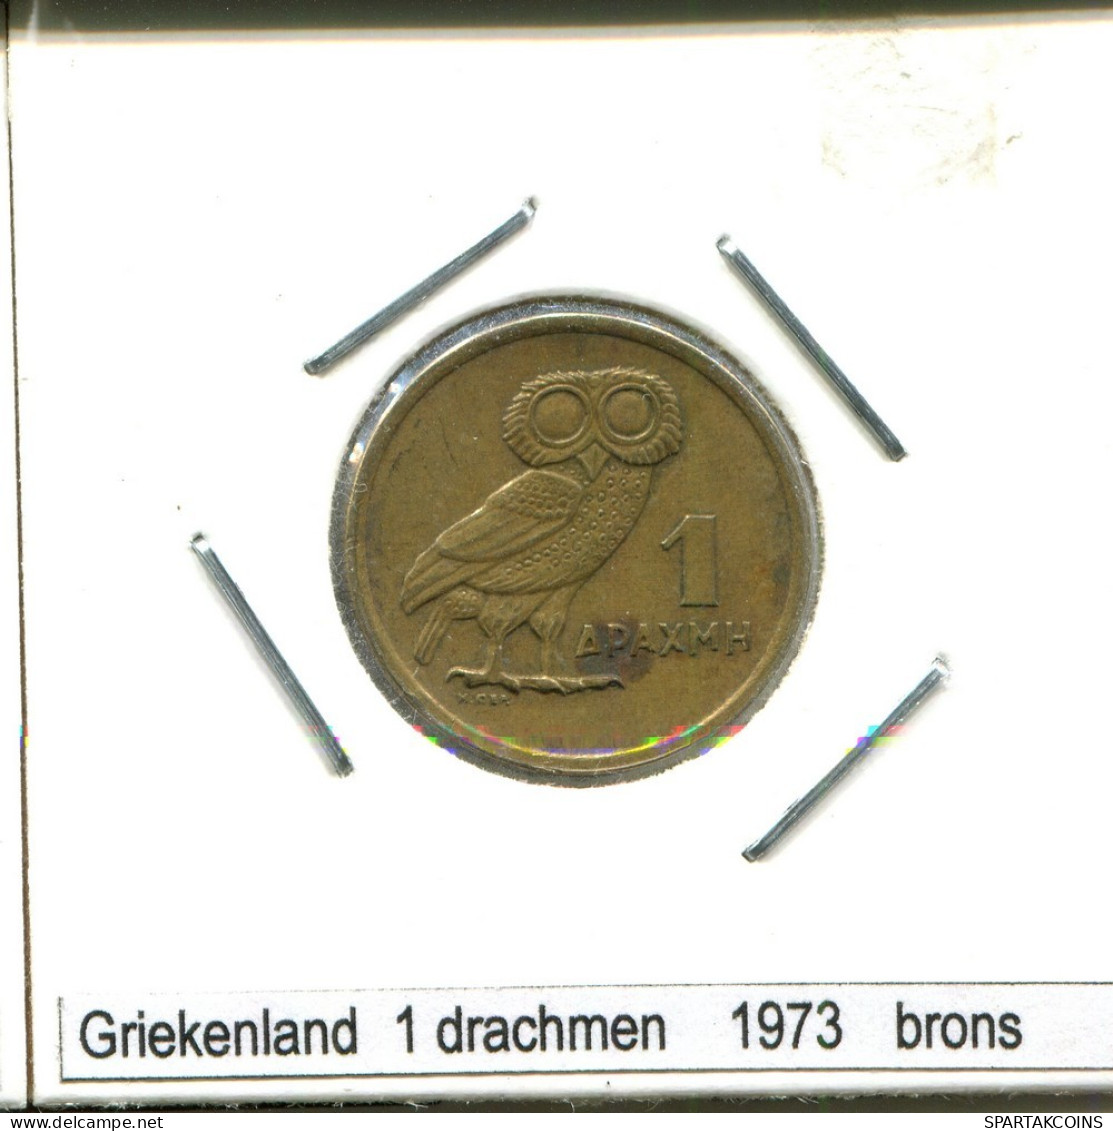 1 DRACHMES 1973 GREECE Coin #AS433.U.A - Greece